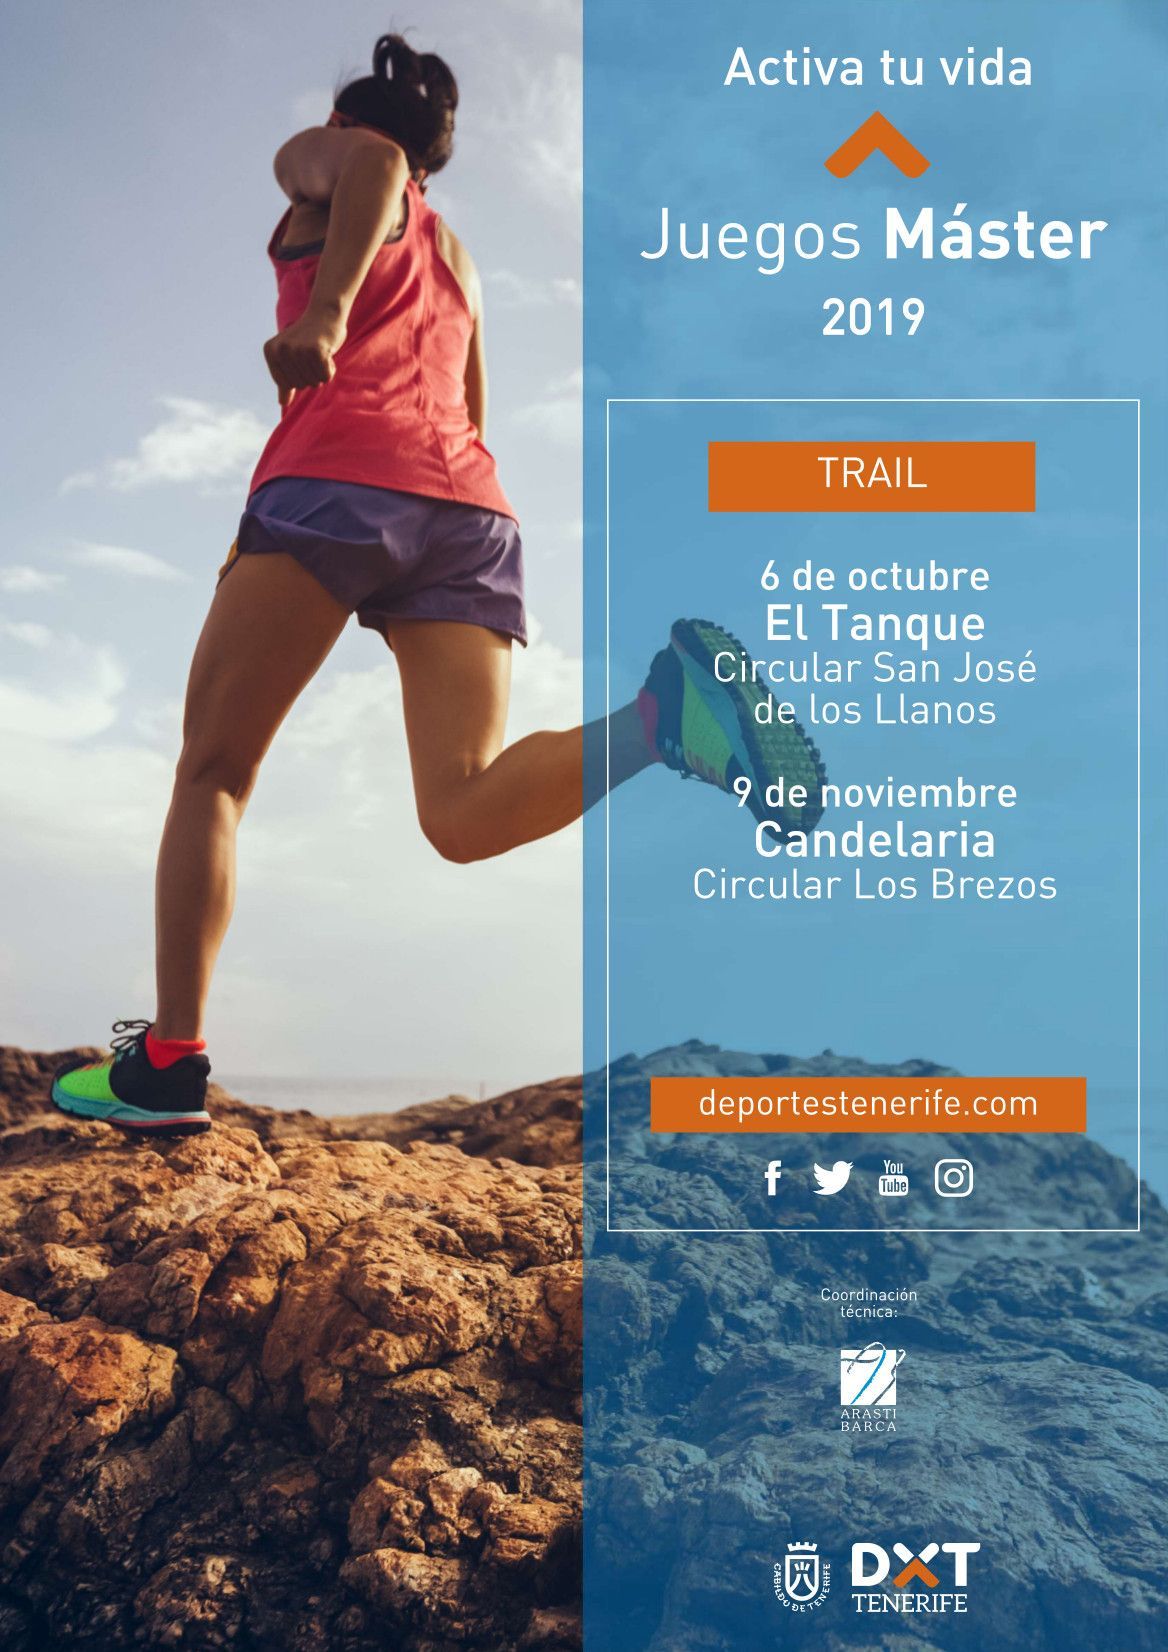 Trail en los Juegos Máster 2019